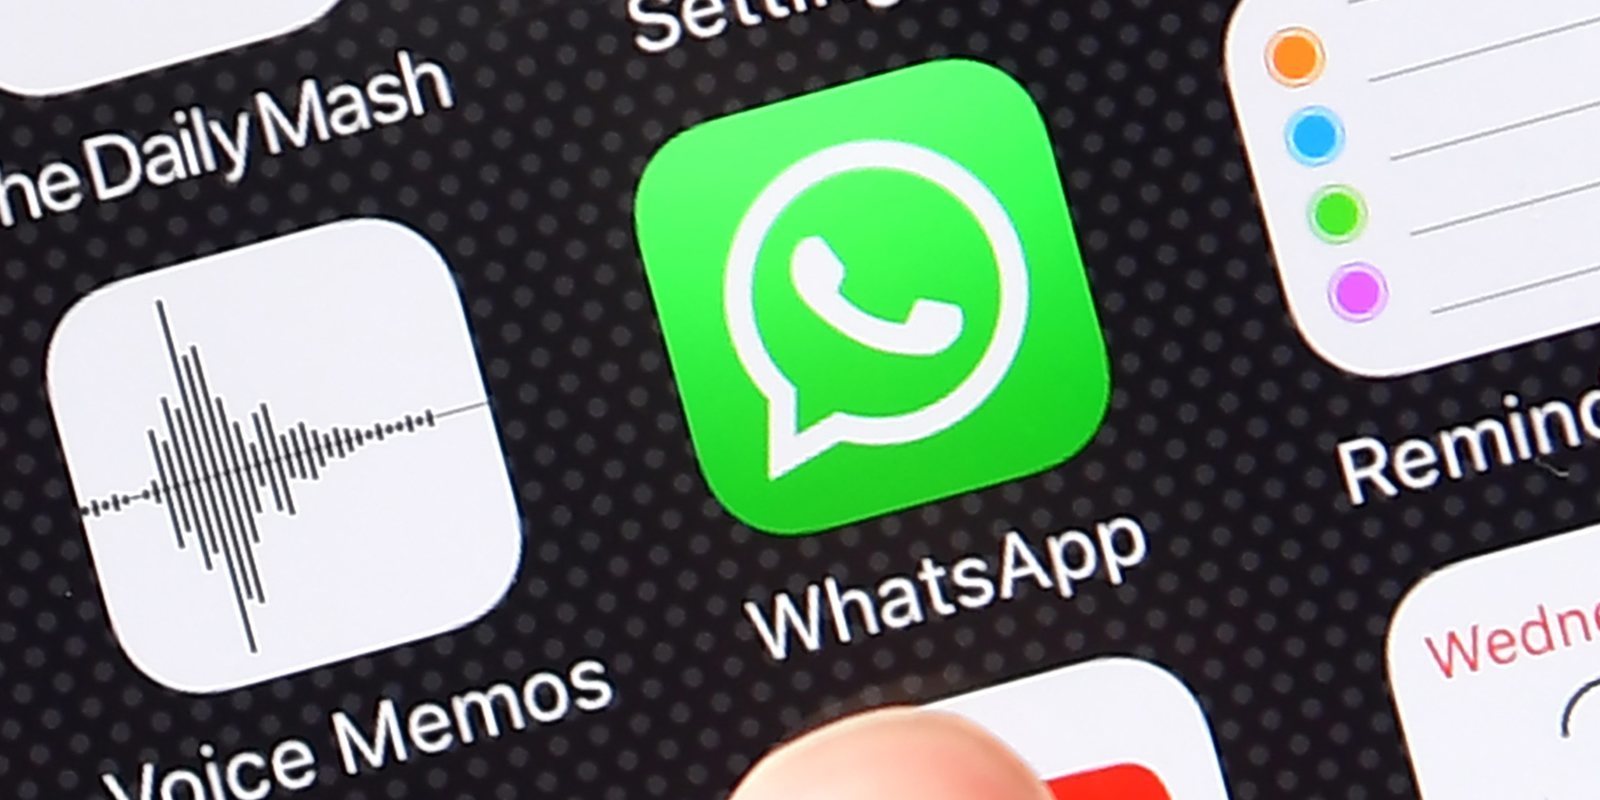 WhatsApp Plus promete darte nuevas funciones y robarte los datos del teléfono